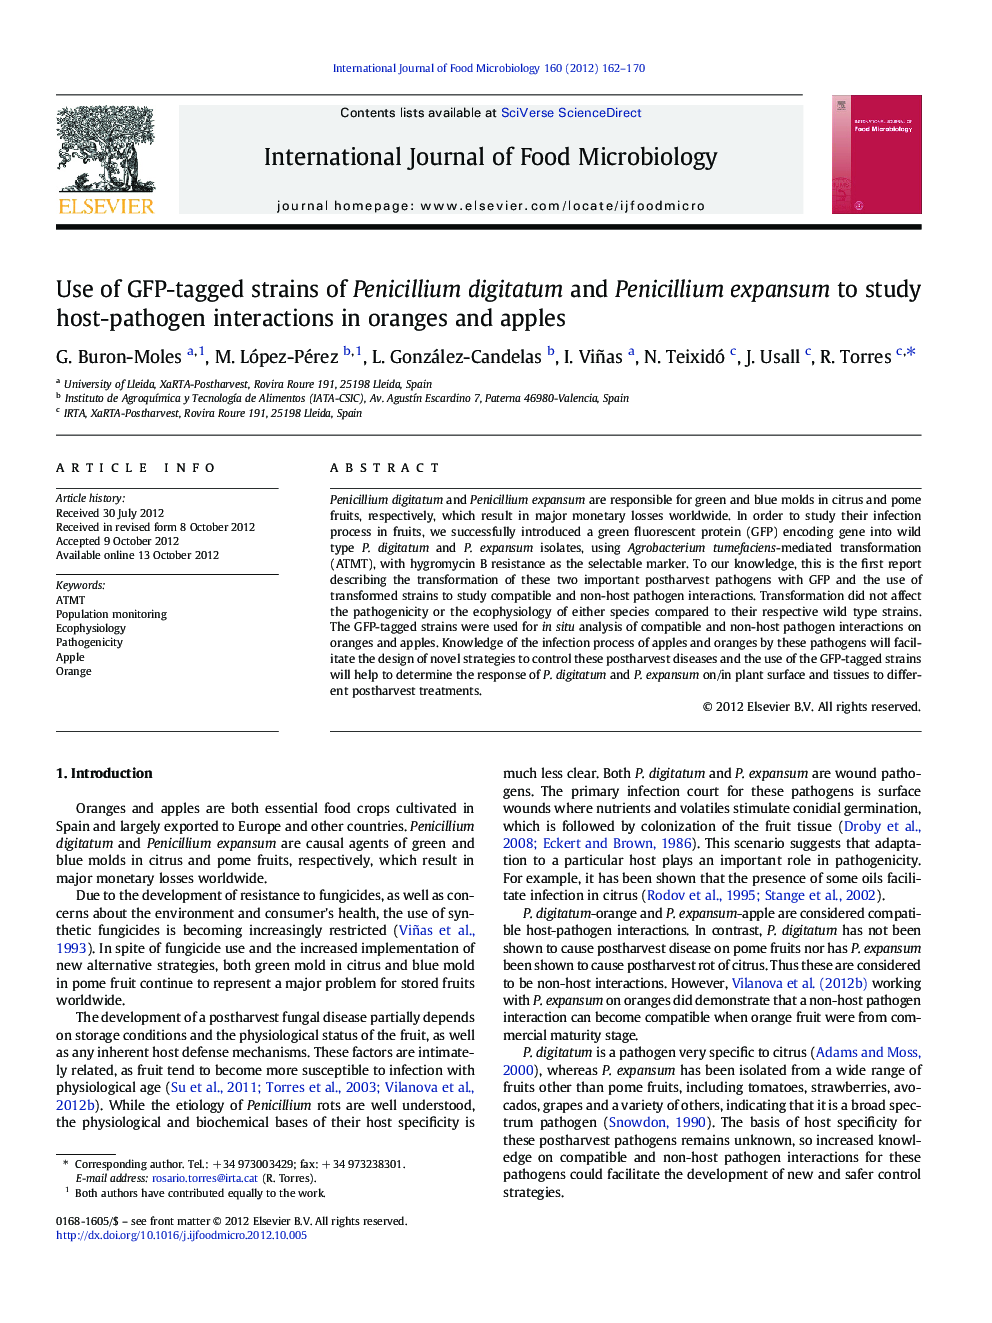 Use of GFP-tagged strains of Penicillium digitatum and Penicillium expansum to study host-pathogen interactions in oranges and apples